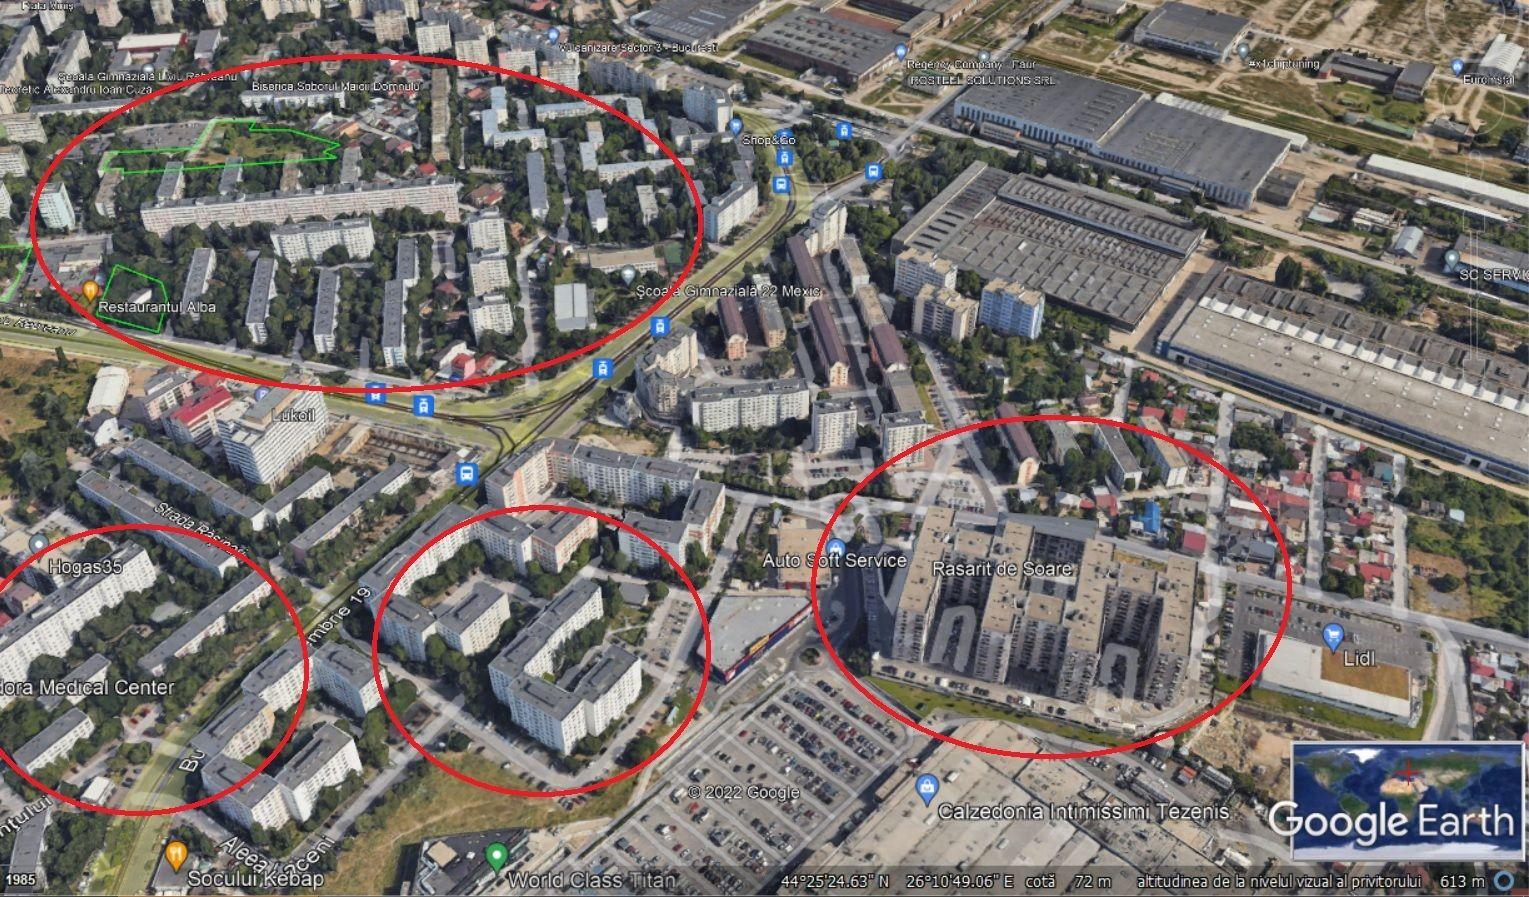 Cu Google Earth se pot vedea cel mai bine cât de diferit se construiește astăzi. În dreapta imaginii poate fi observat complexul rezidențial Răsărit de Soare, betonat și destul de sterp, în partea stângă vedem blocuri „comuniste” înconjurate de verdeață